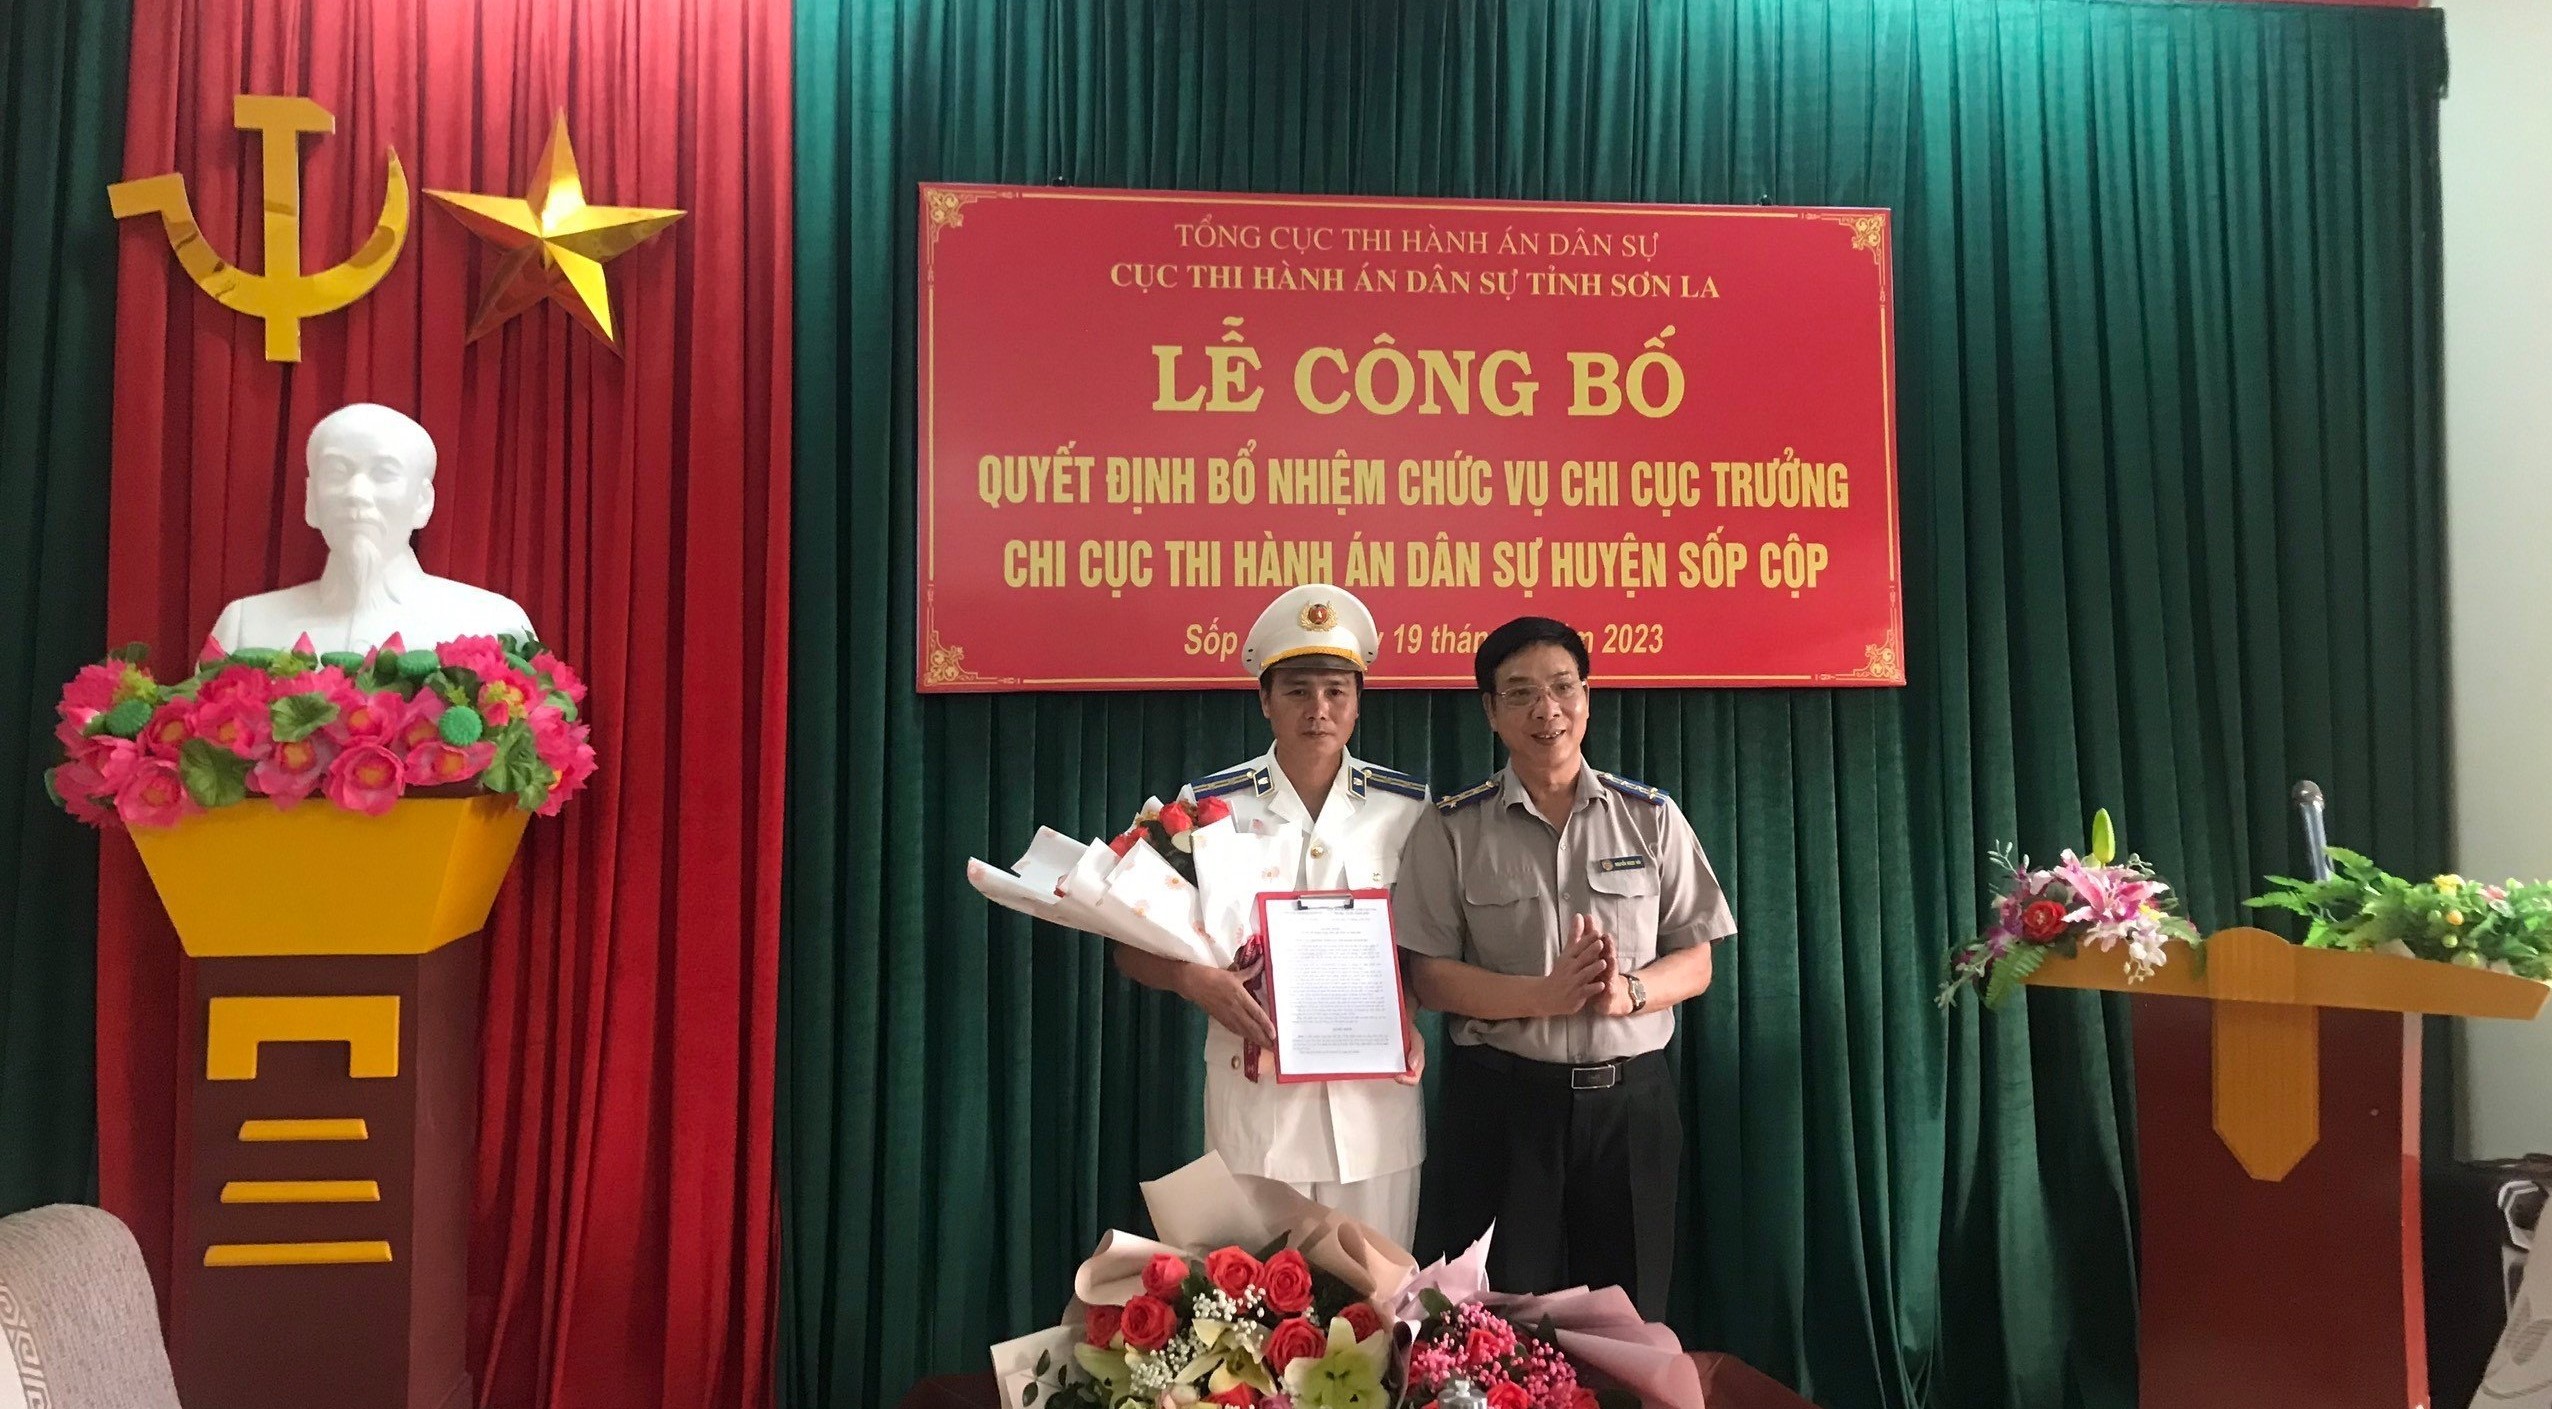 Lễ công bố và trao Quyết định bổ nhiệm Chi cục trưởng Chi cục Thi hành án dân sự huyện Sốp Cộp, tỉnh Sơn La